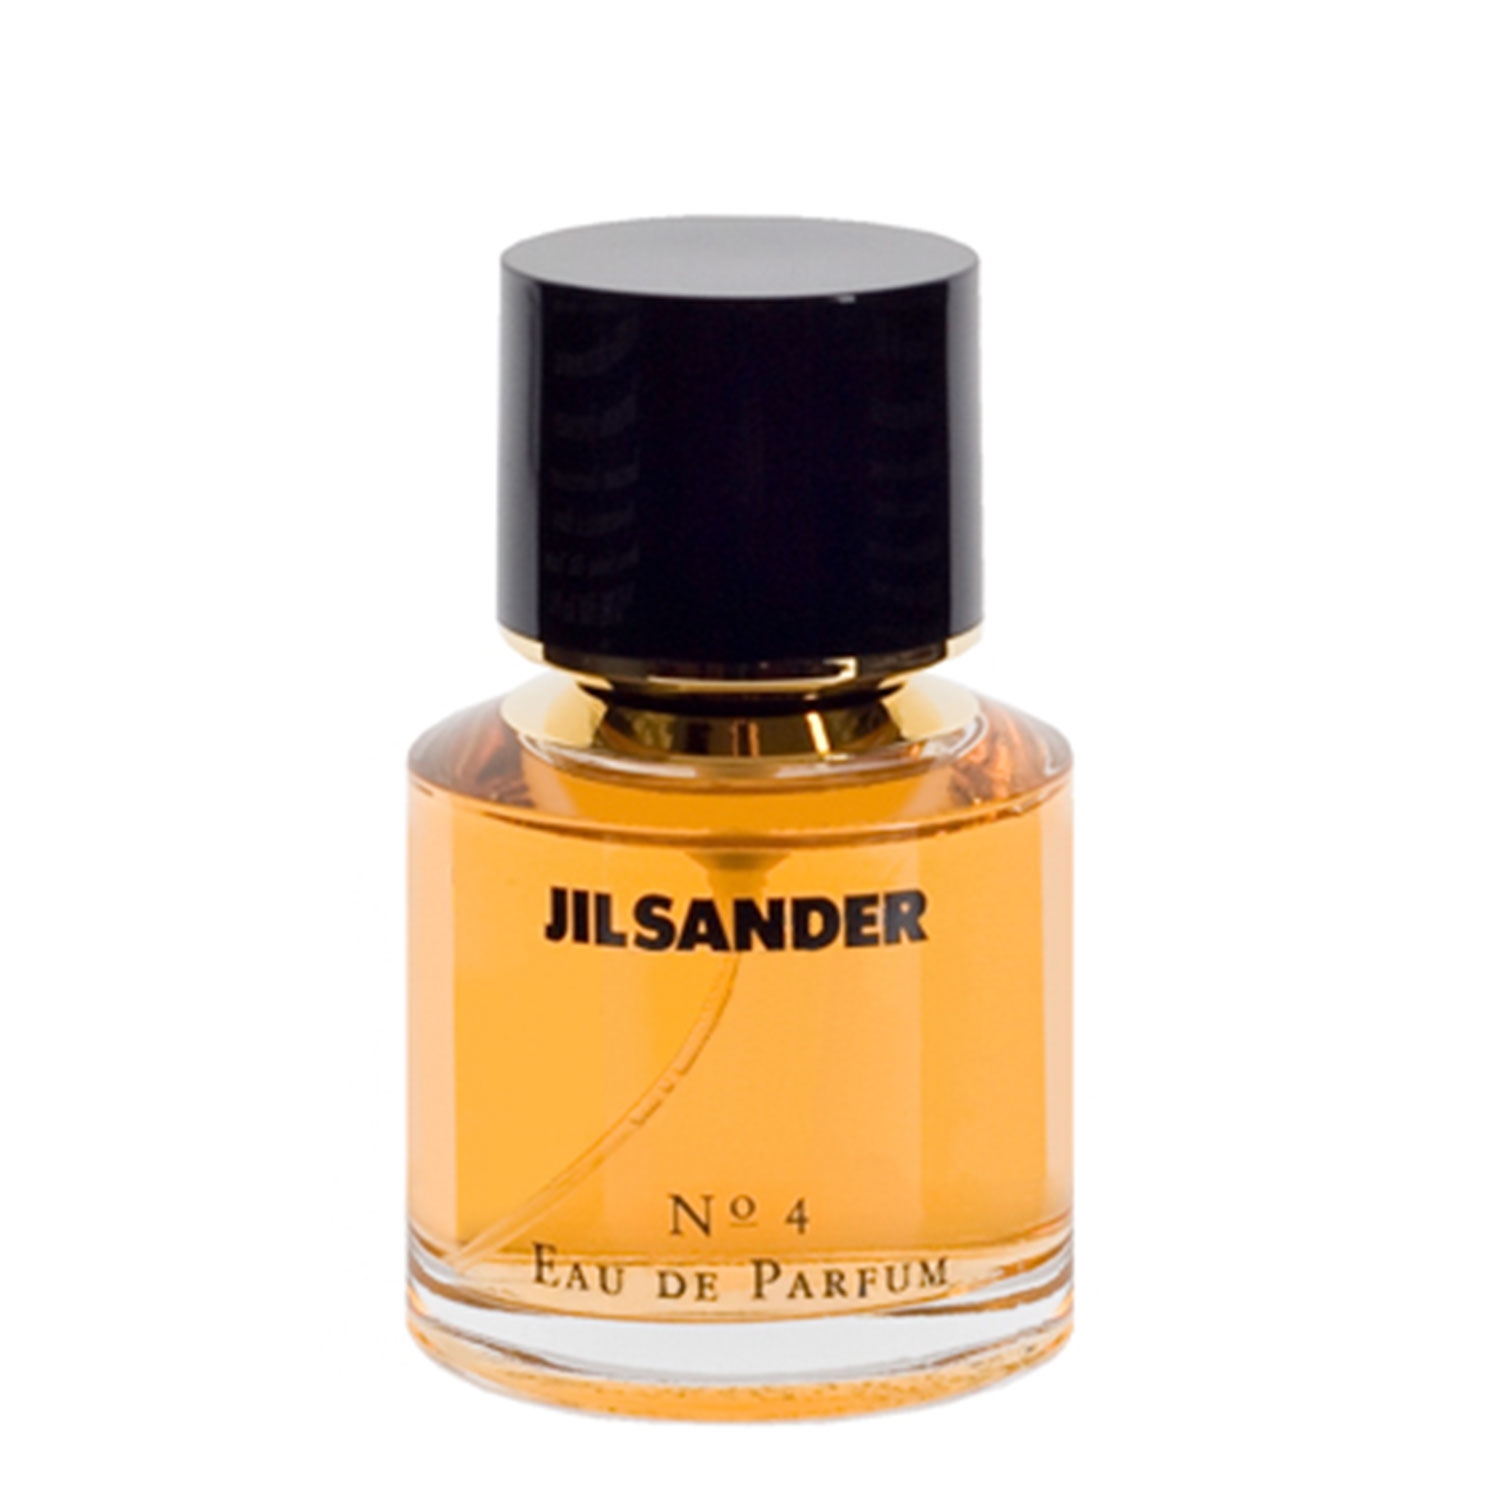 Product image from Jil Sander - N° 4 Eau de Parfum